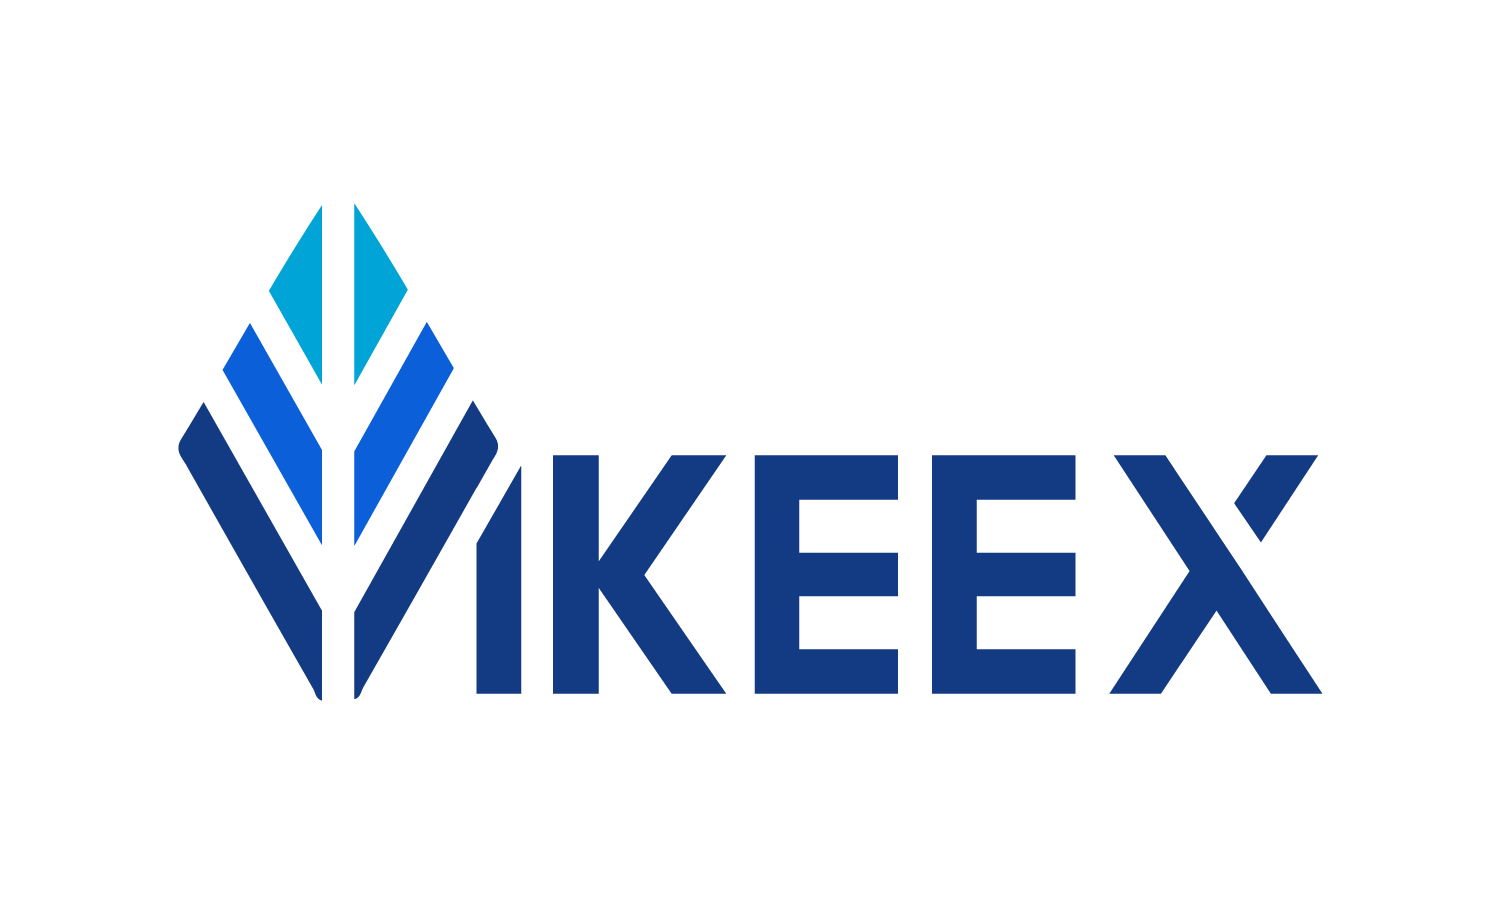 VIKEEX